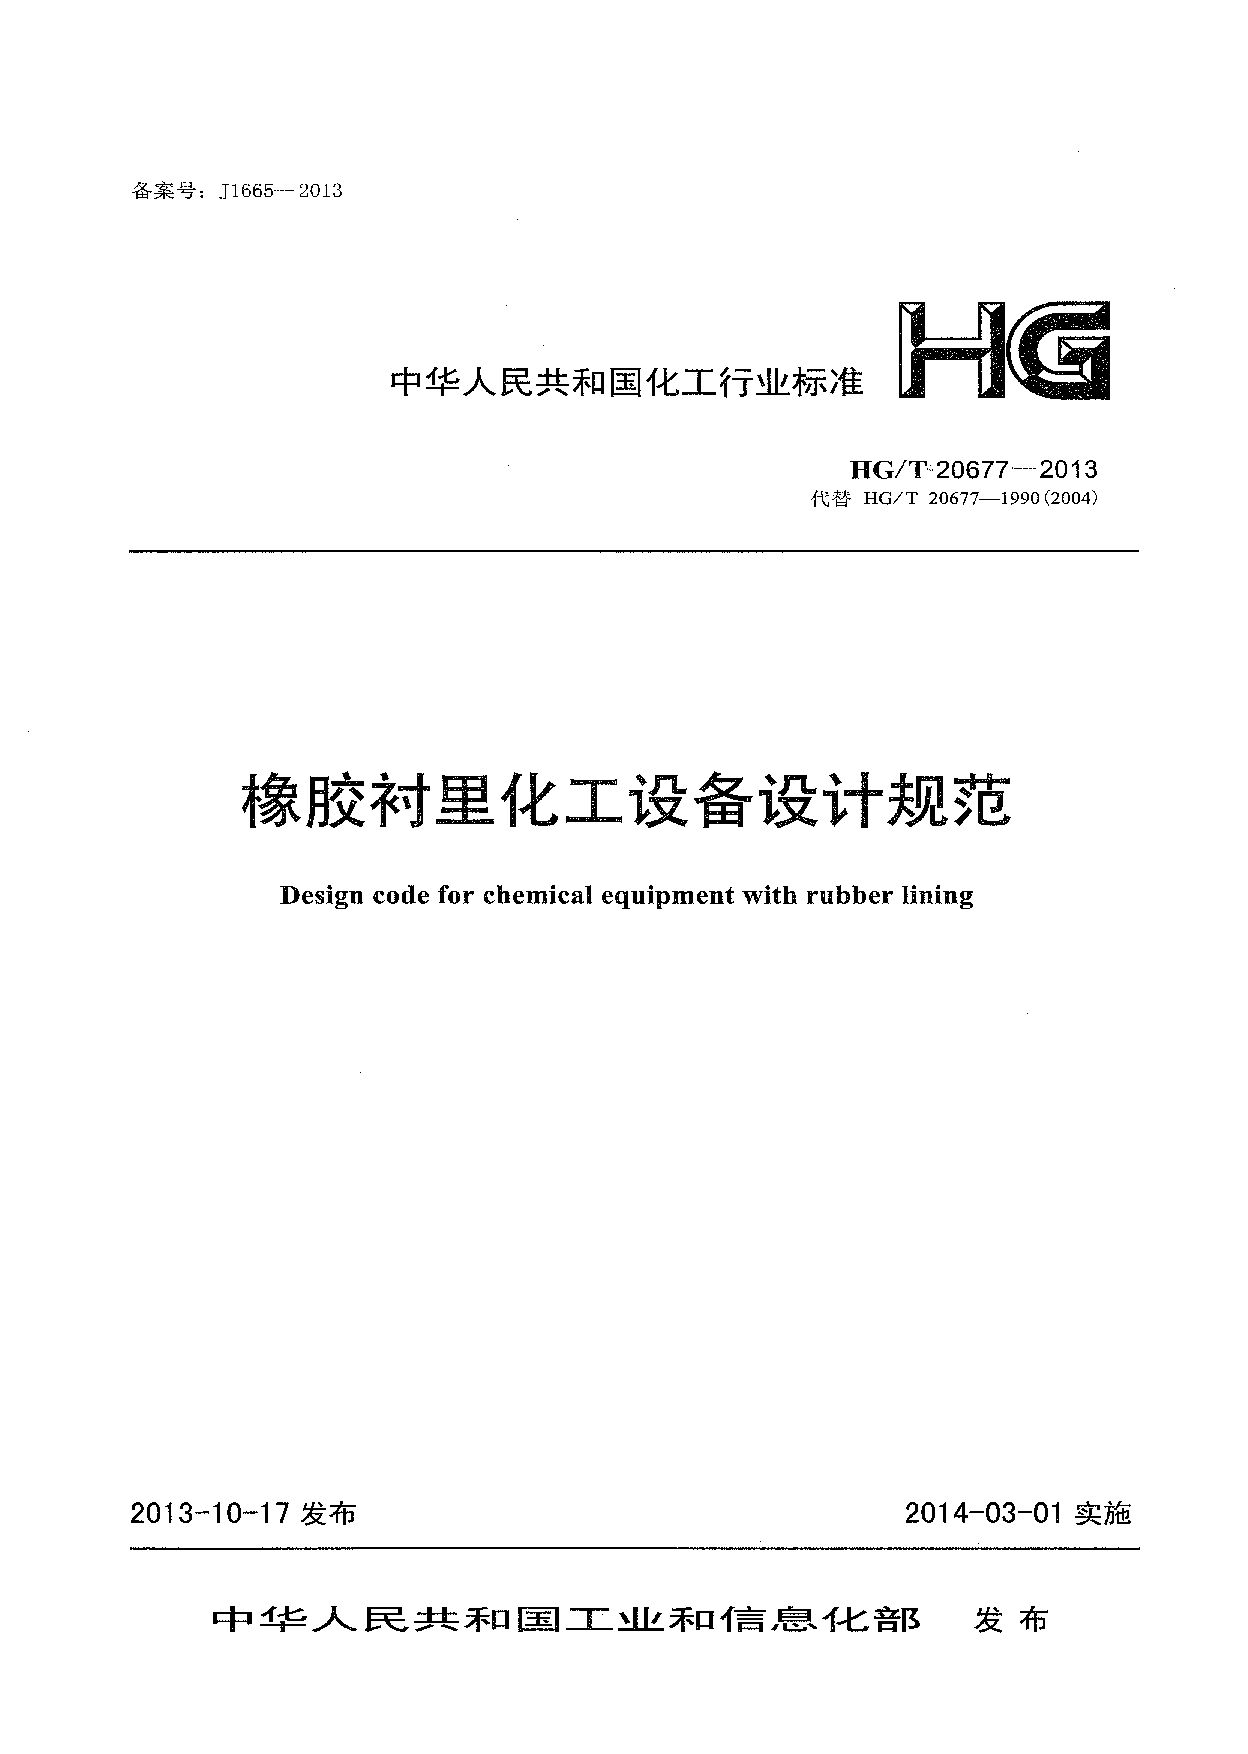 HG/T 20677-2013